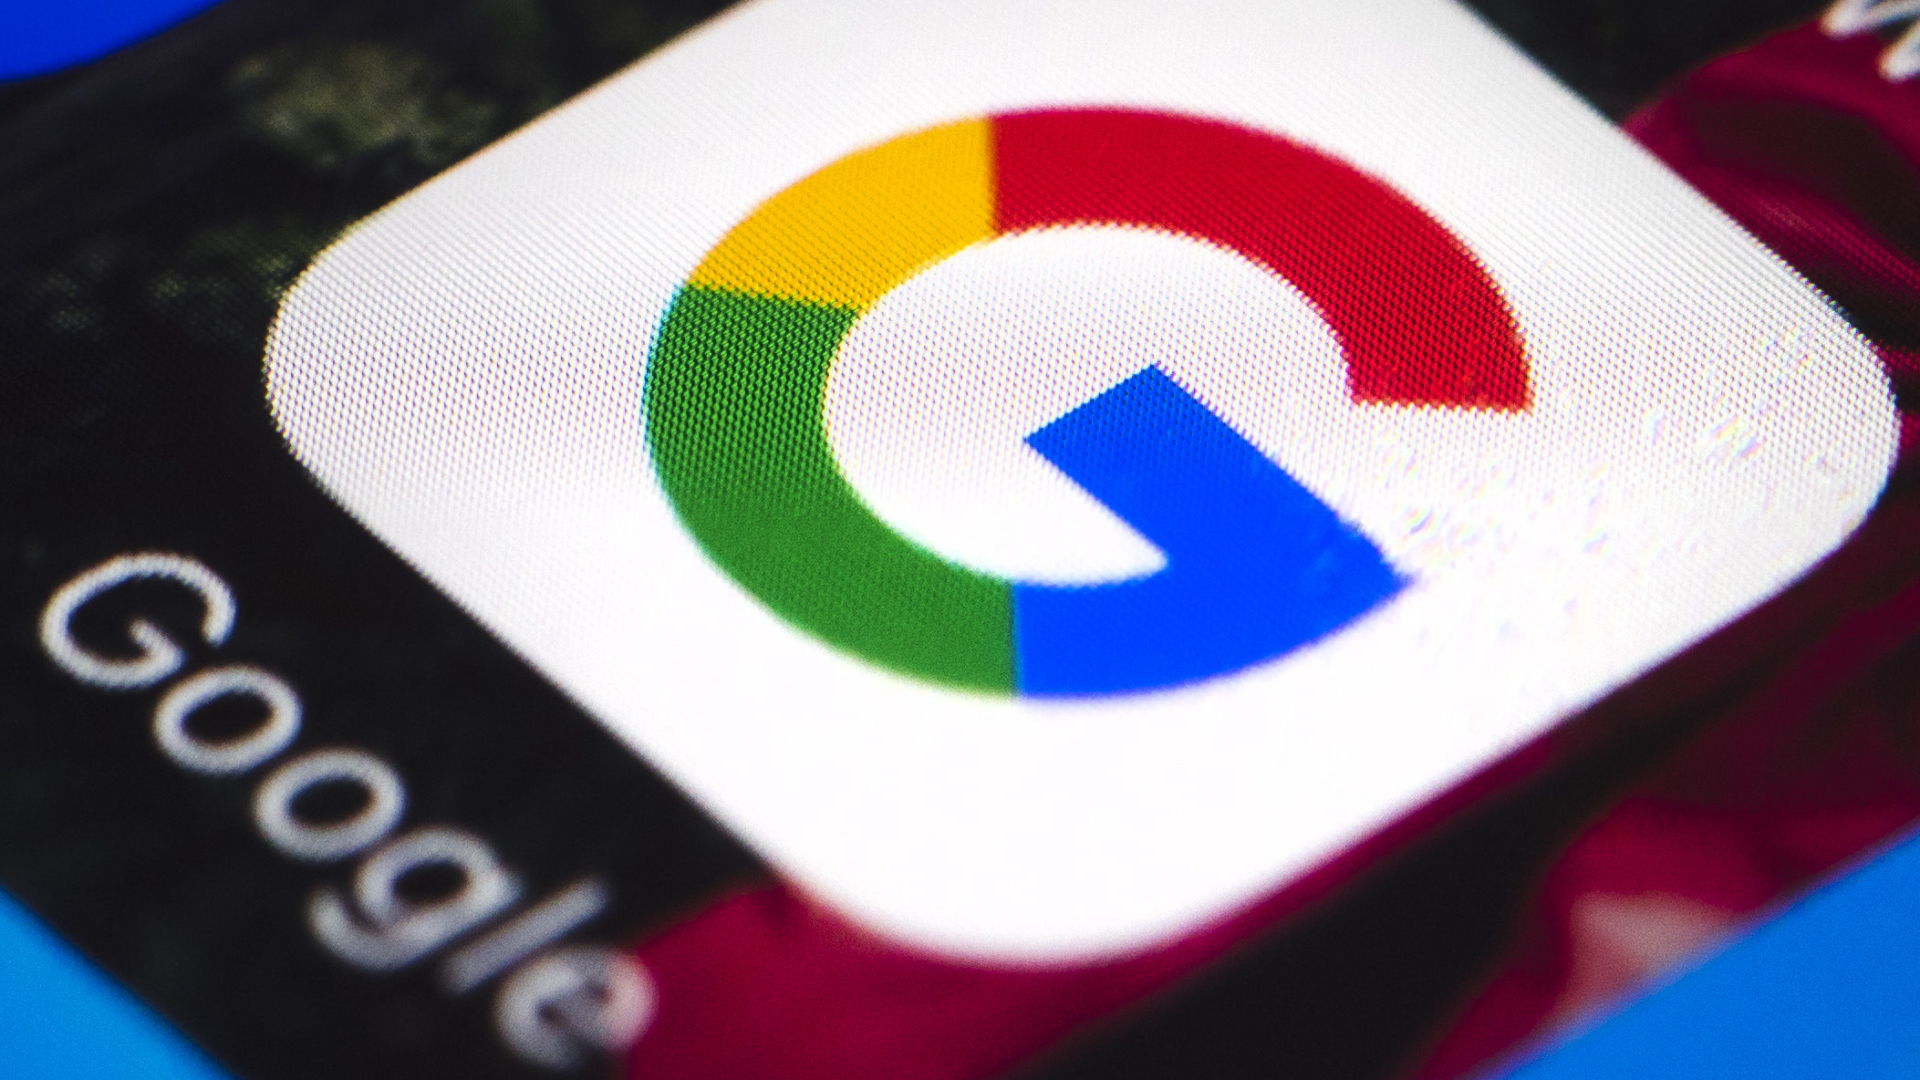 Das Google-Logo auf dem Display eines Mobiltelefons.